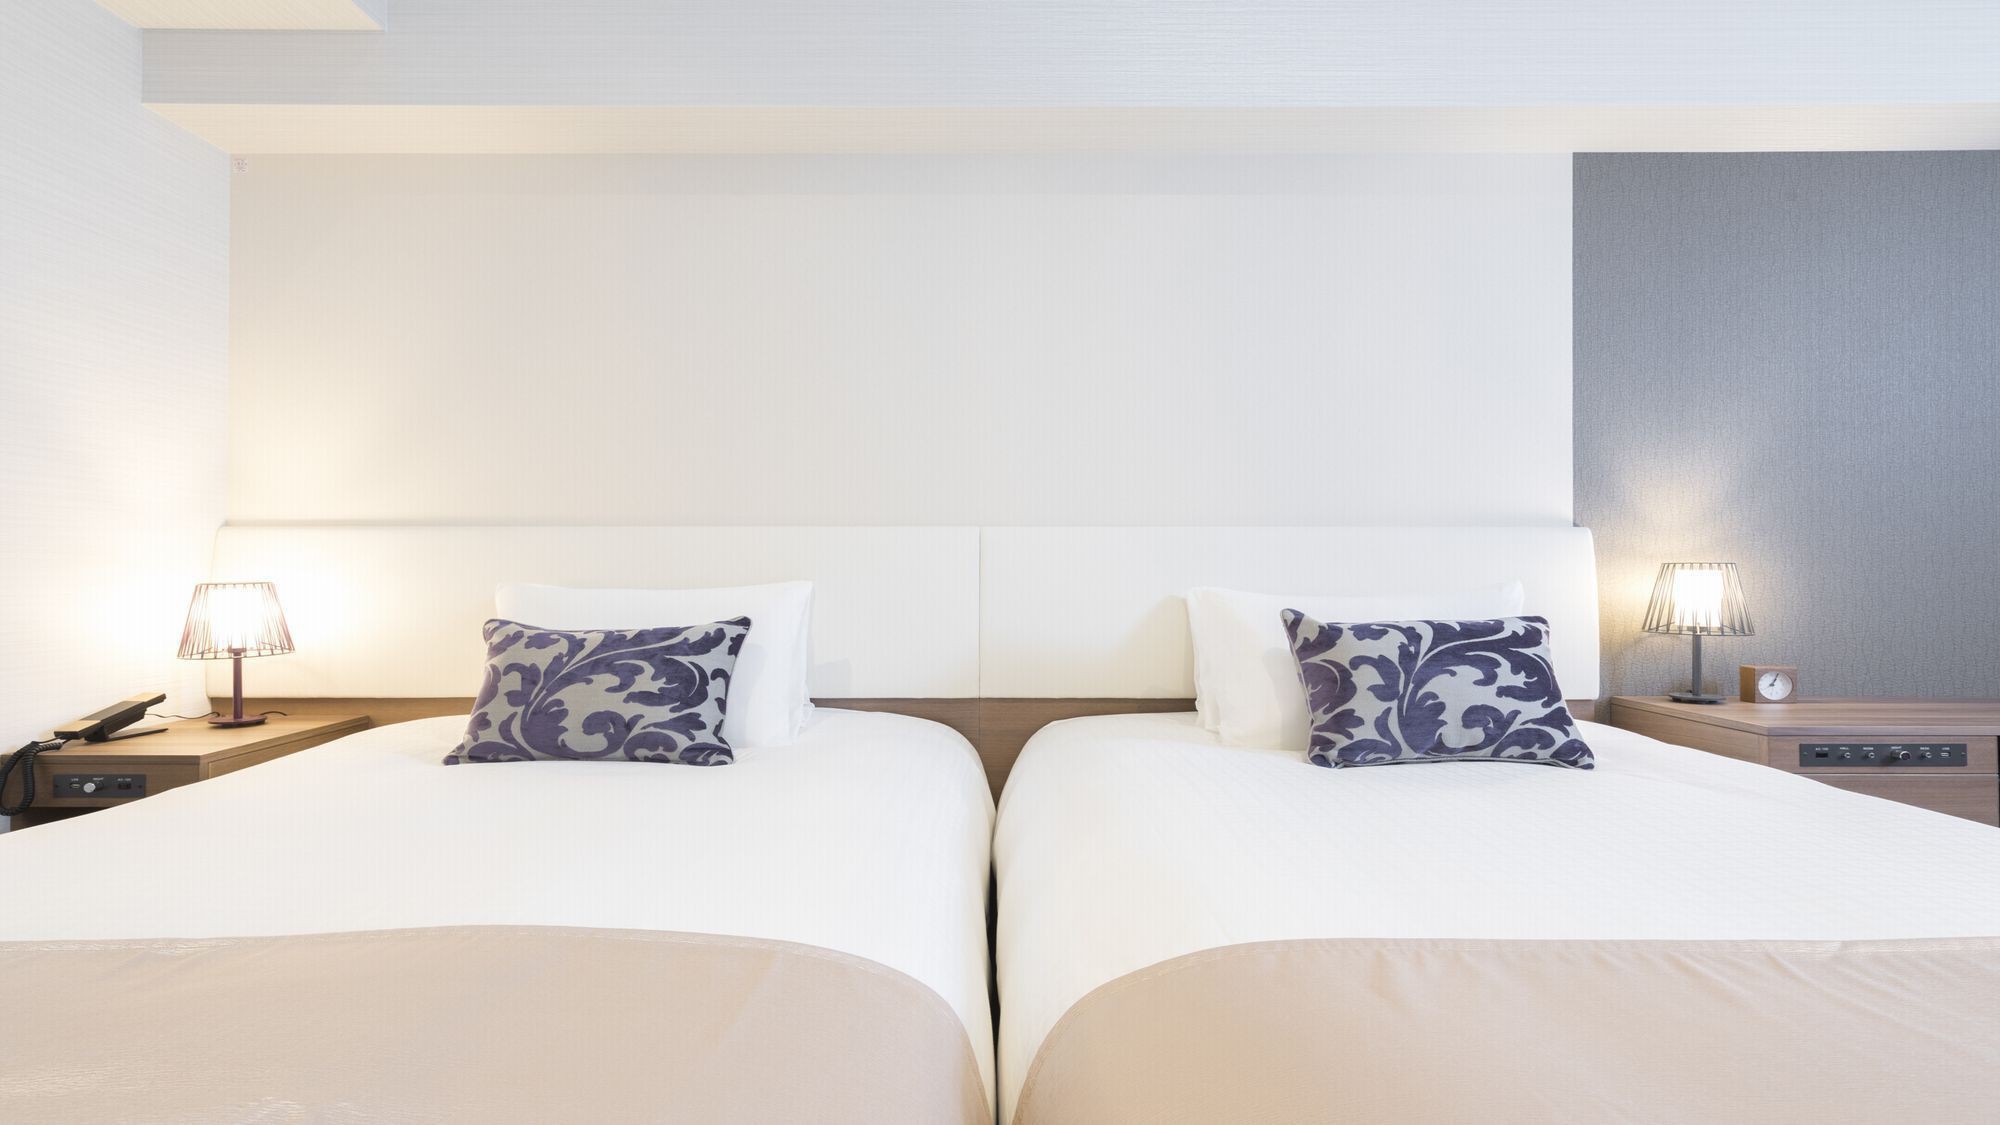 【ツインルーム】ベッドを二つ並べたハリウッドツイン仕様なので、ダブルベッド感覚の利用もできます。